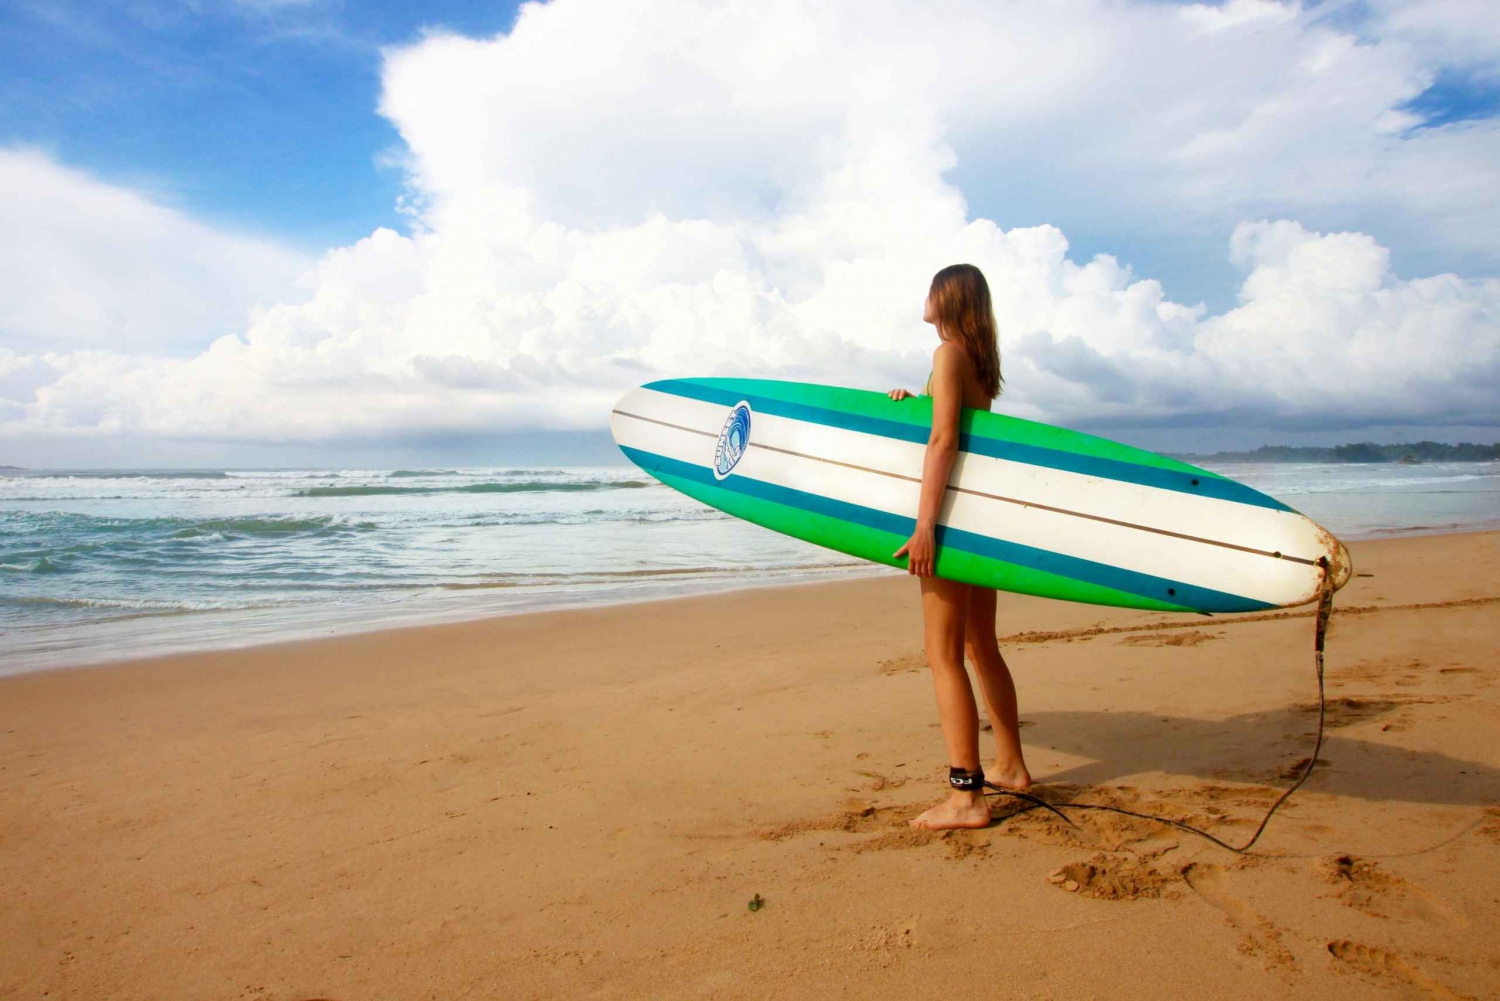 Surfkurs - perfekt våg för nybörjare och avancerade surfare